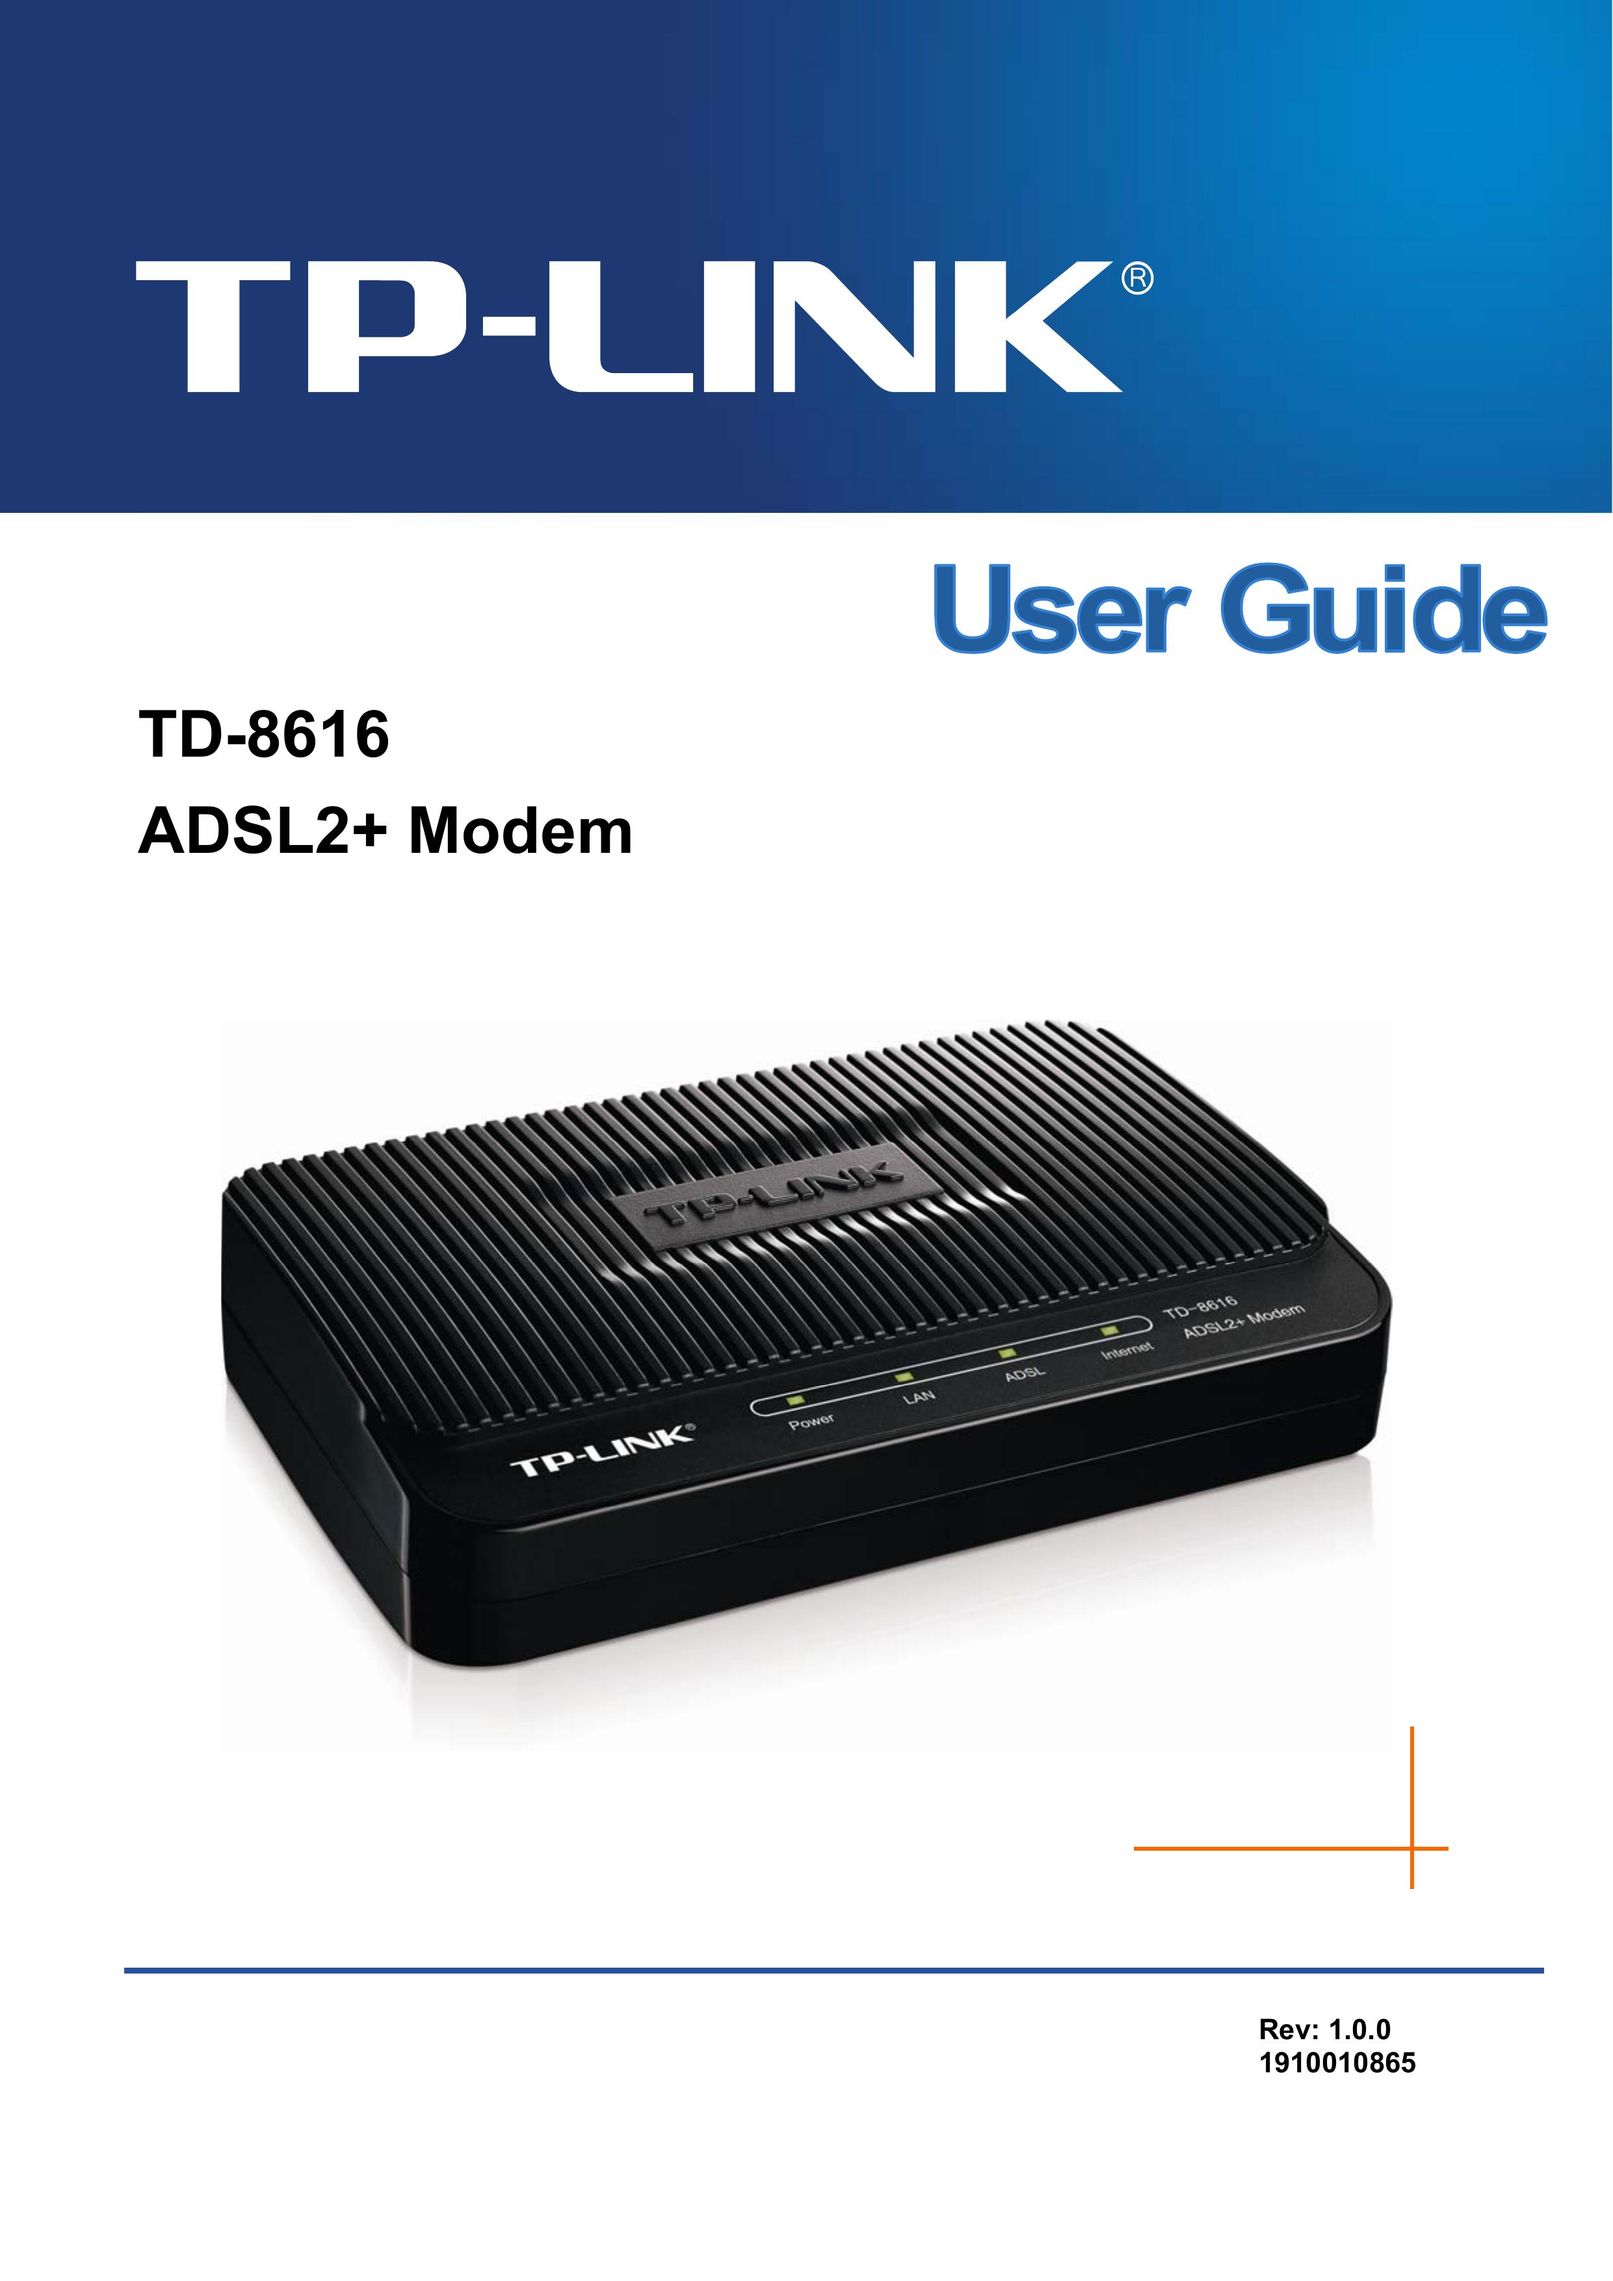 TP-Link TD-8616 Modem User Manual